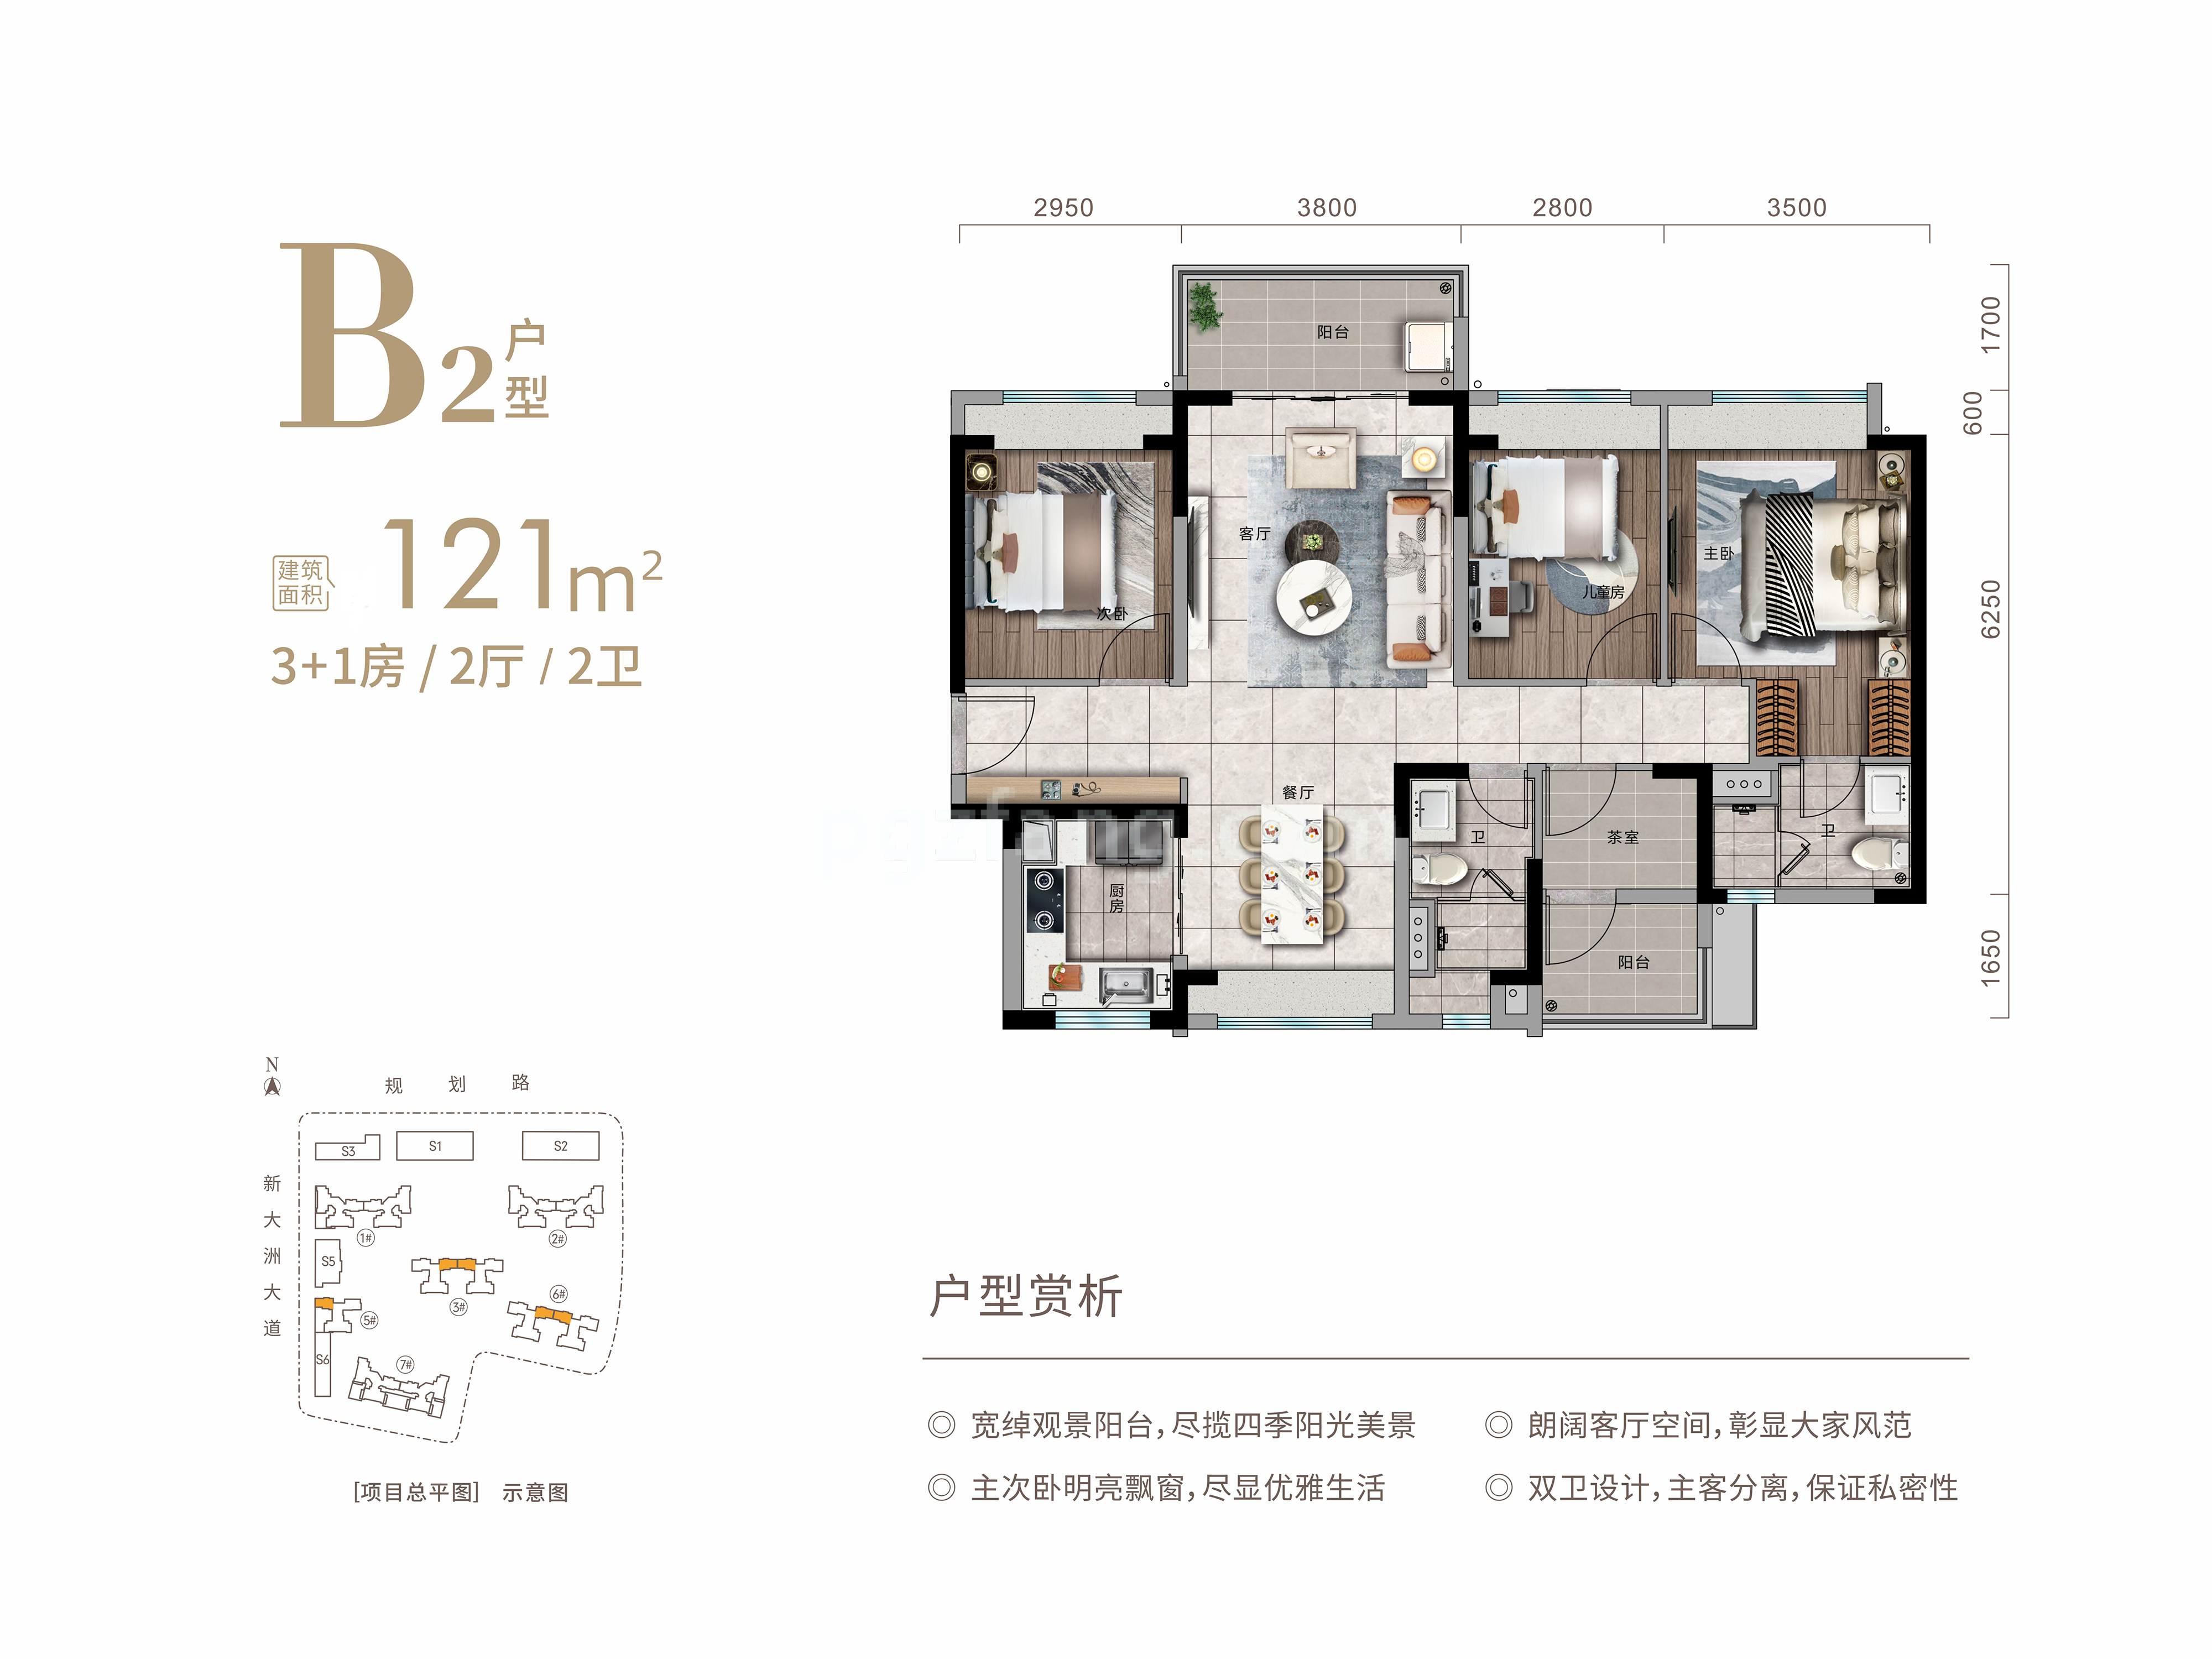 高层 B2户型 3+1房2厅2卫 建筑面积121㎡